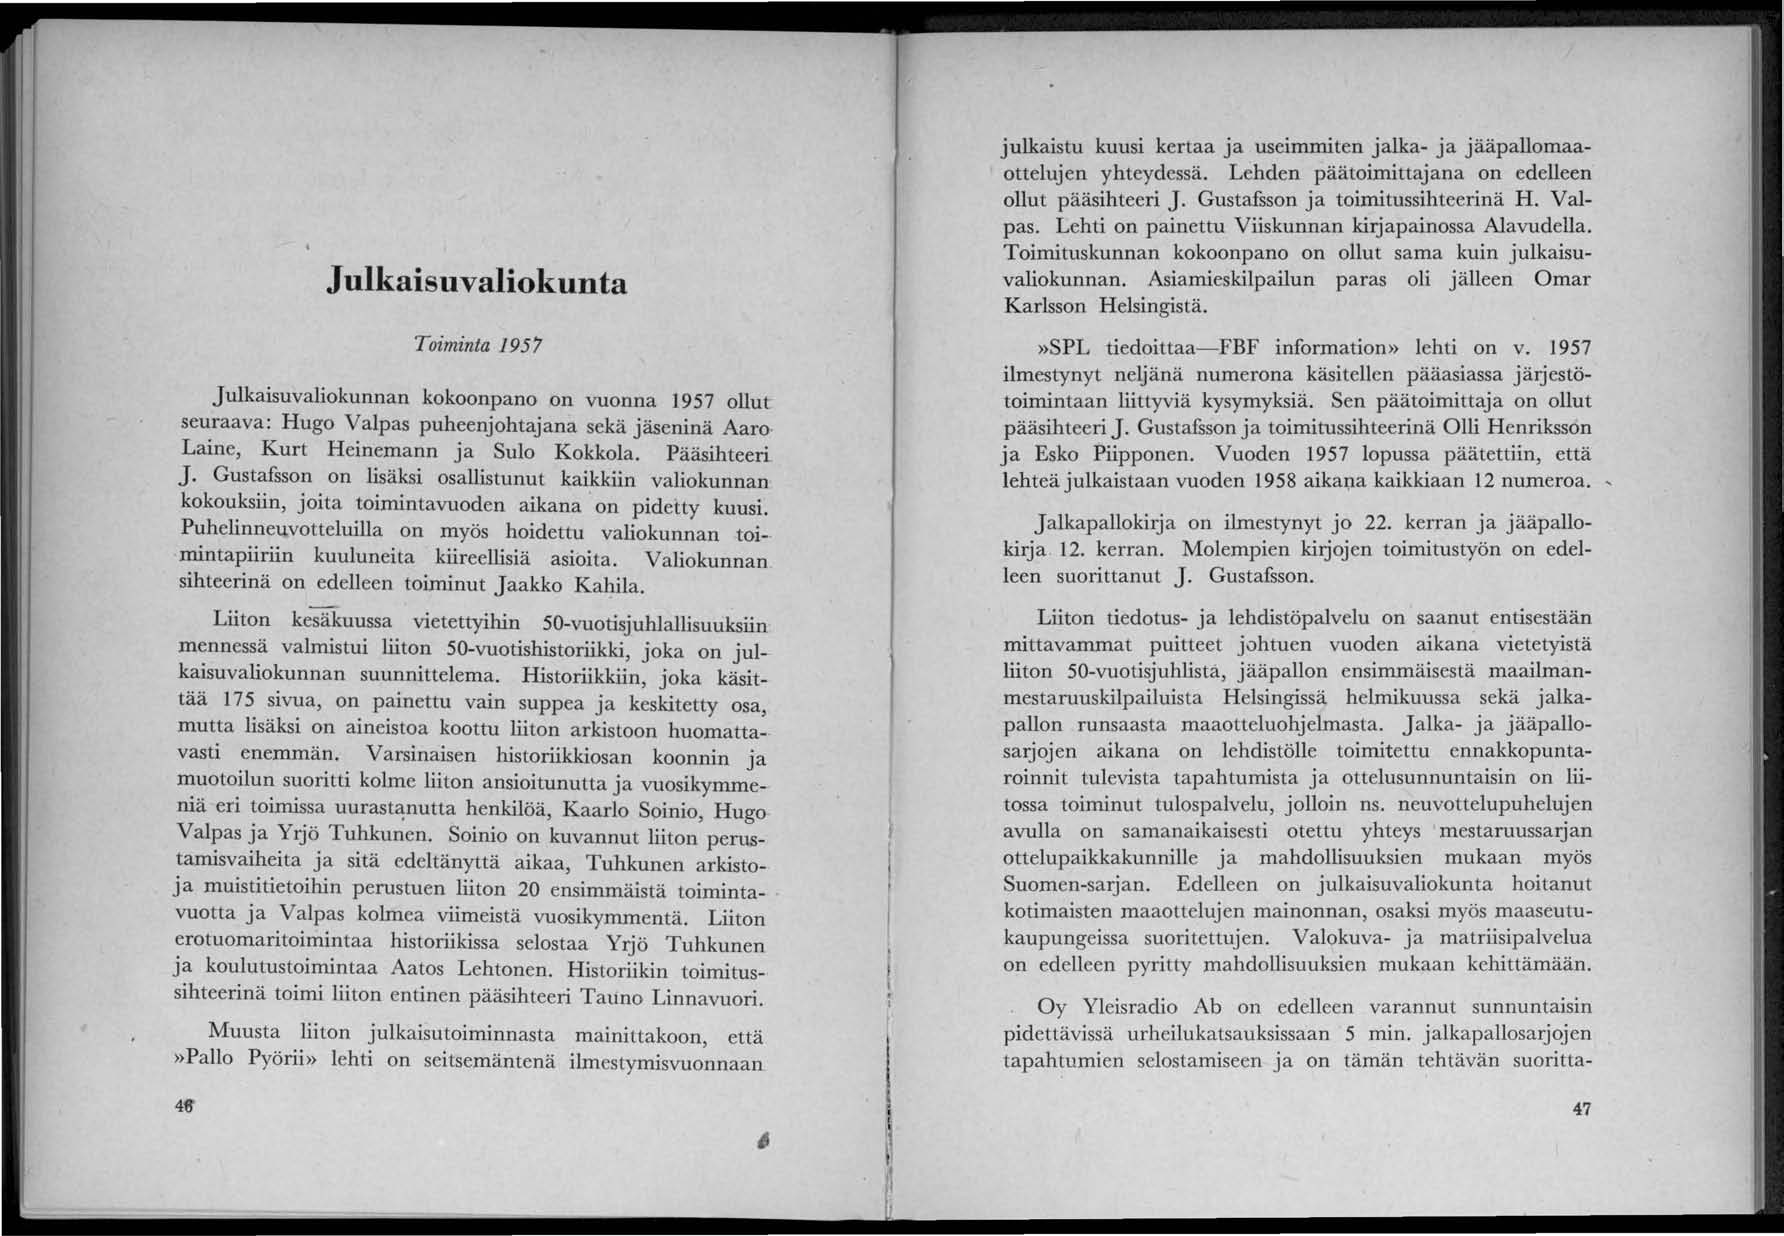 Julkaisuvaliokunta Toiminta 195'7 Julkaisuvaliokunnan kokoonpano on vuonna 1957 ollut seuraava: Hugo Valpas puheenjohtajana sekä jäseninä Aaro Laine, Kurt Heinemann ja Sulo Kokkola. Pääsihteeri J.